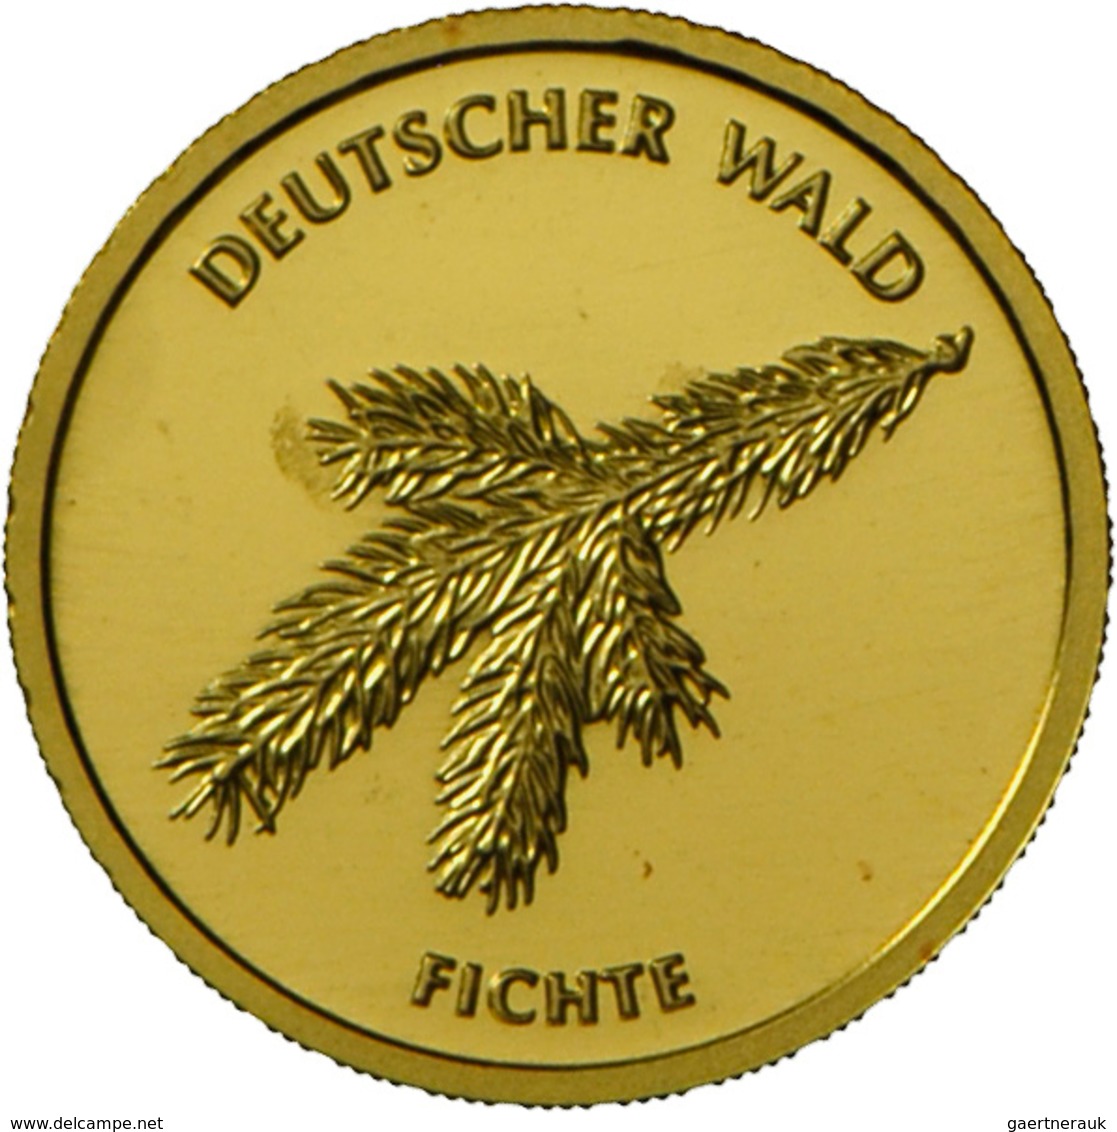 Deutschland - Anlagegold: 2 X 20 Euro 2012 Fichte (F,G), Jaeger 572. Jede Münze Wiegt 3,89 G 999/100 - Alemania